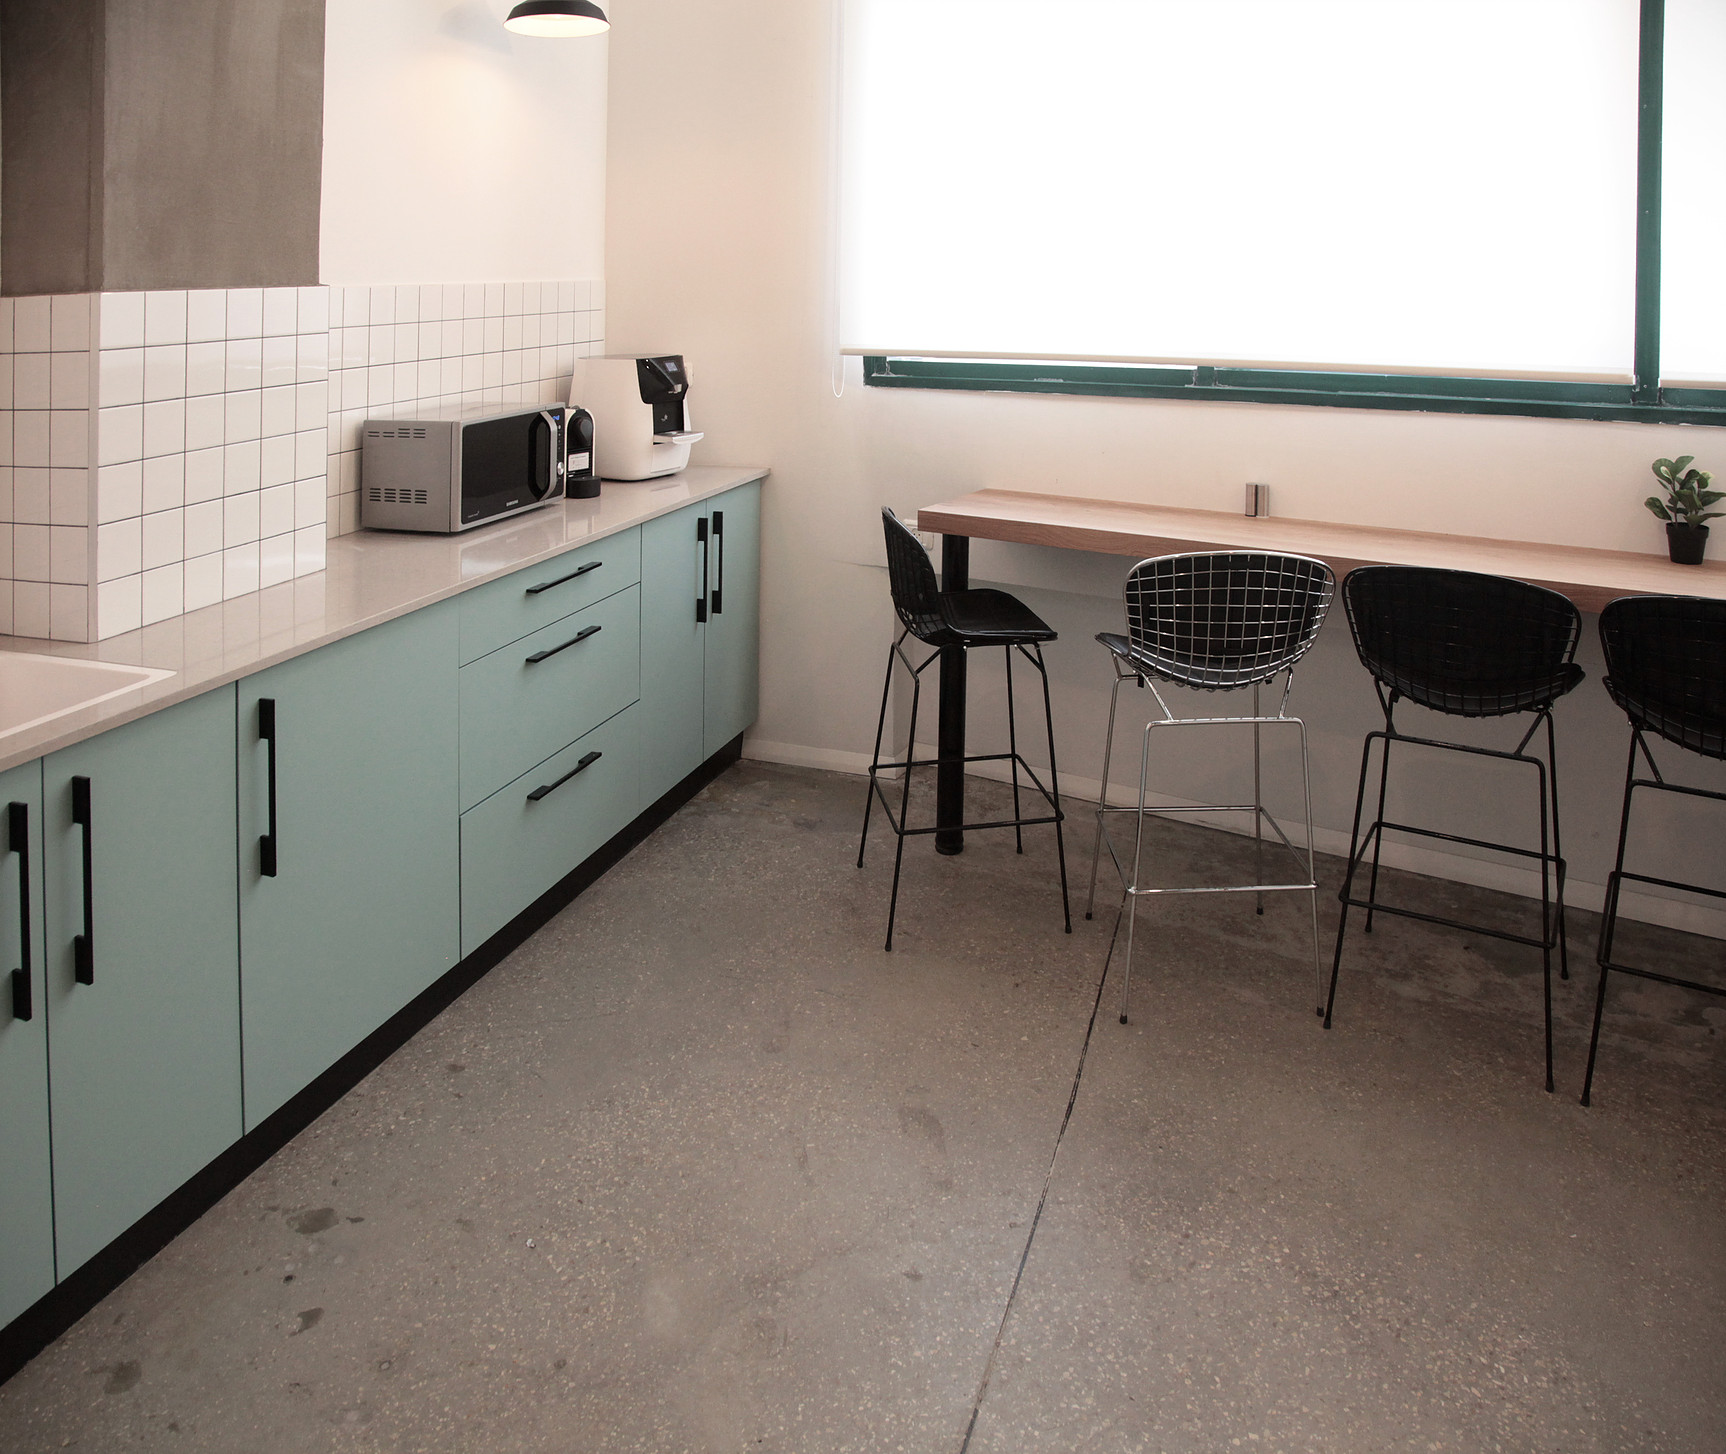  Office mint color kitchen